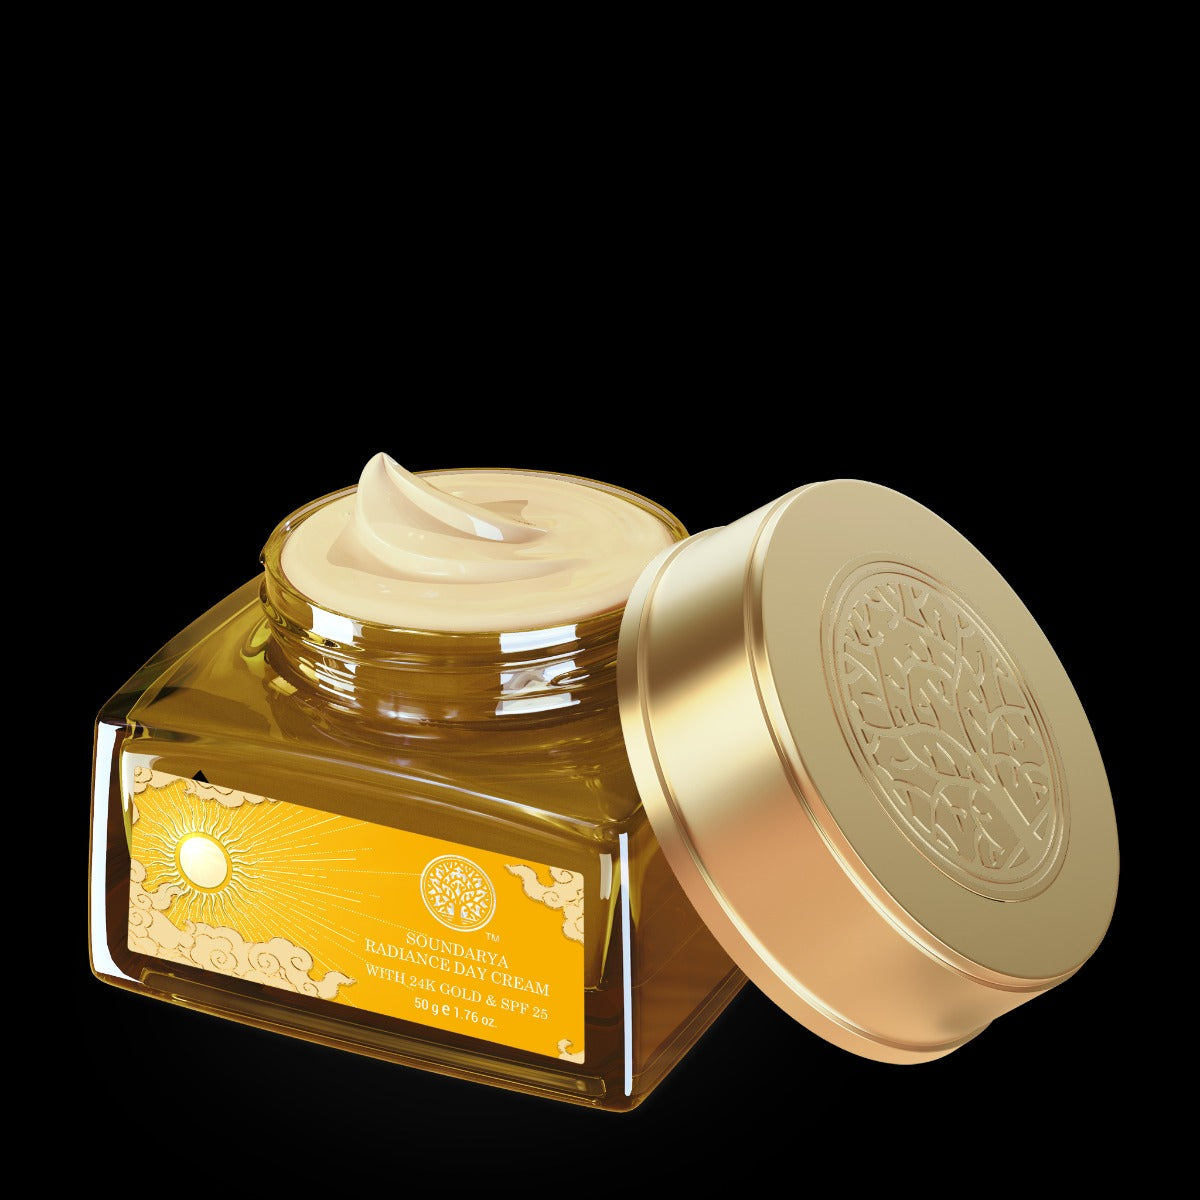 Forest Essentials Soundarya Radiance Cream With 24K Gold & SPF25 - Distacart